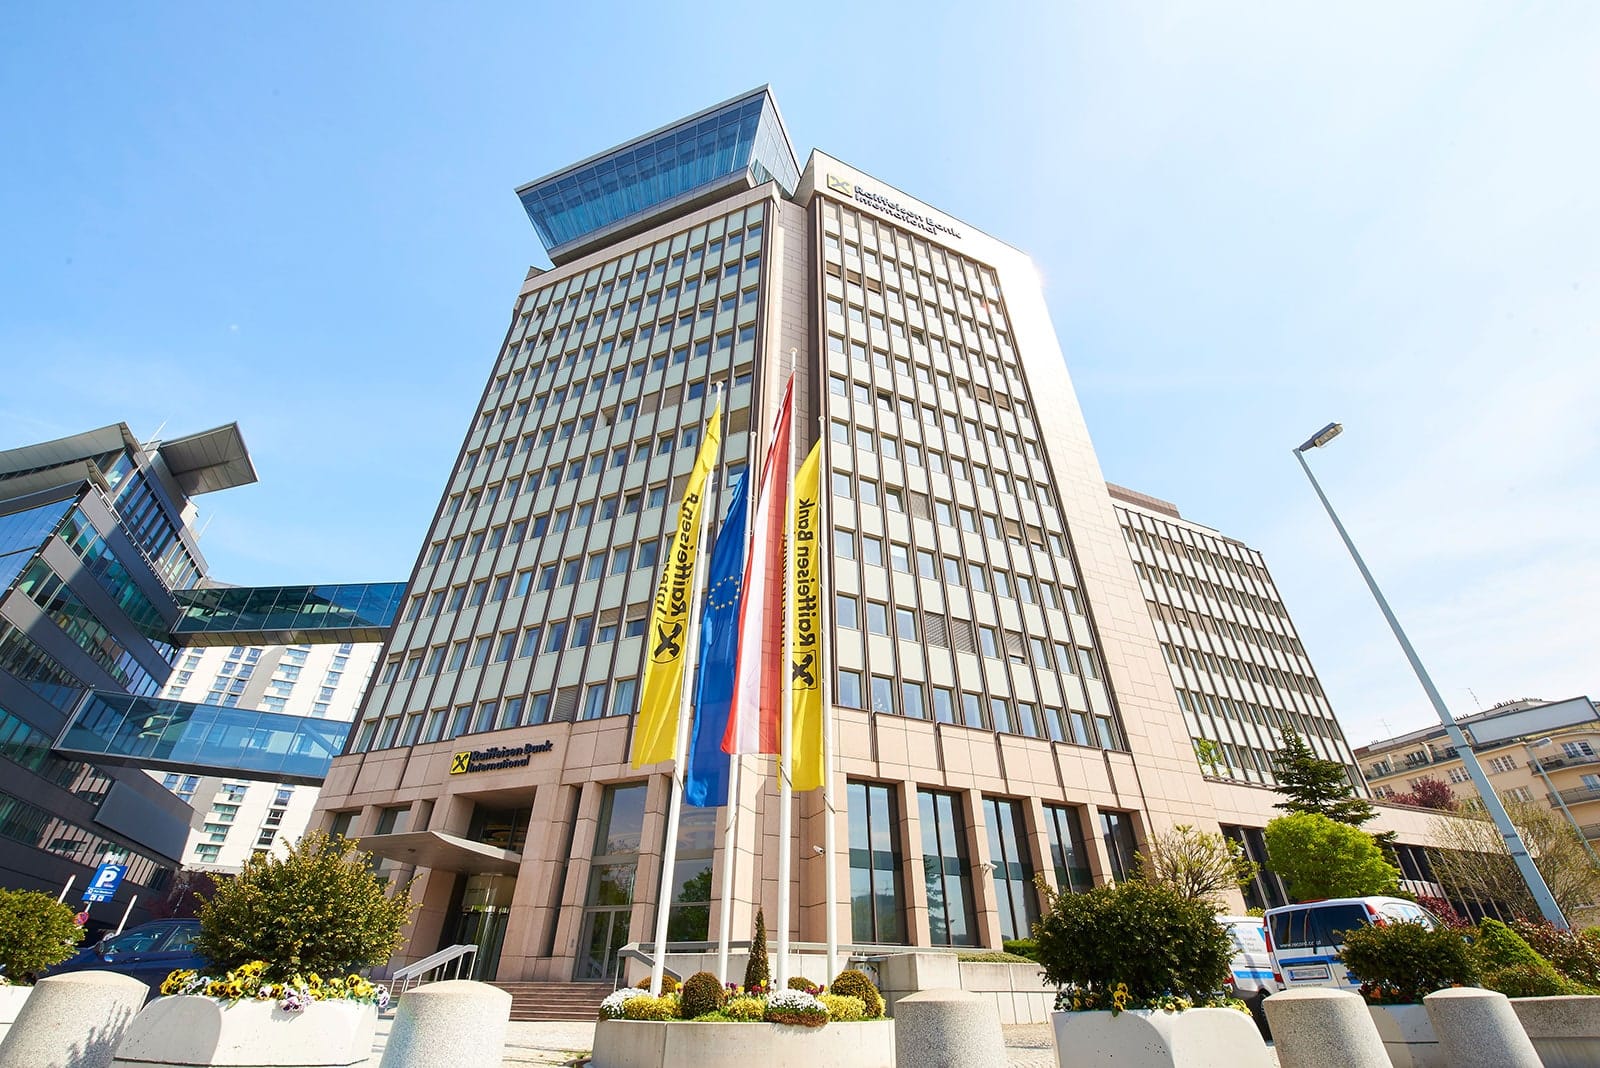 RBI Headquarter Wien_Online Summit